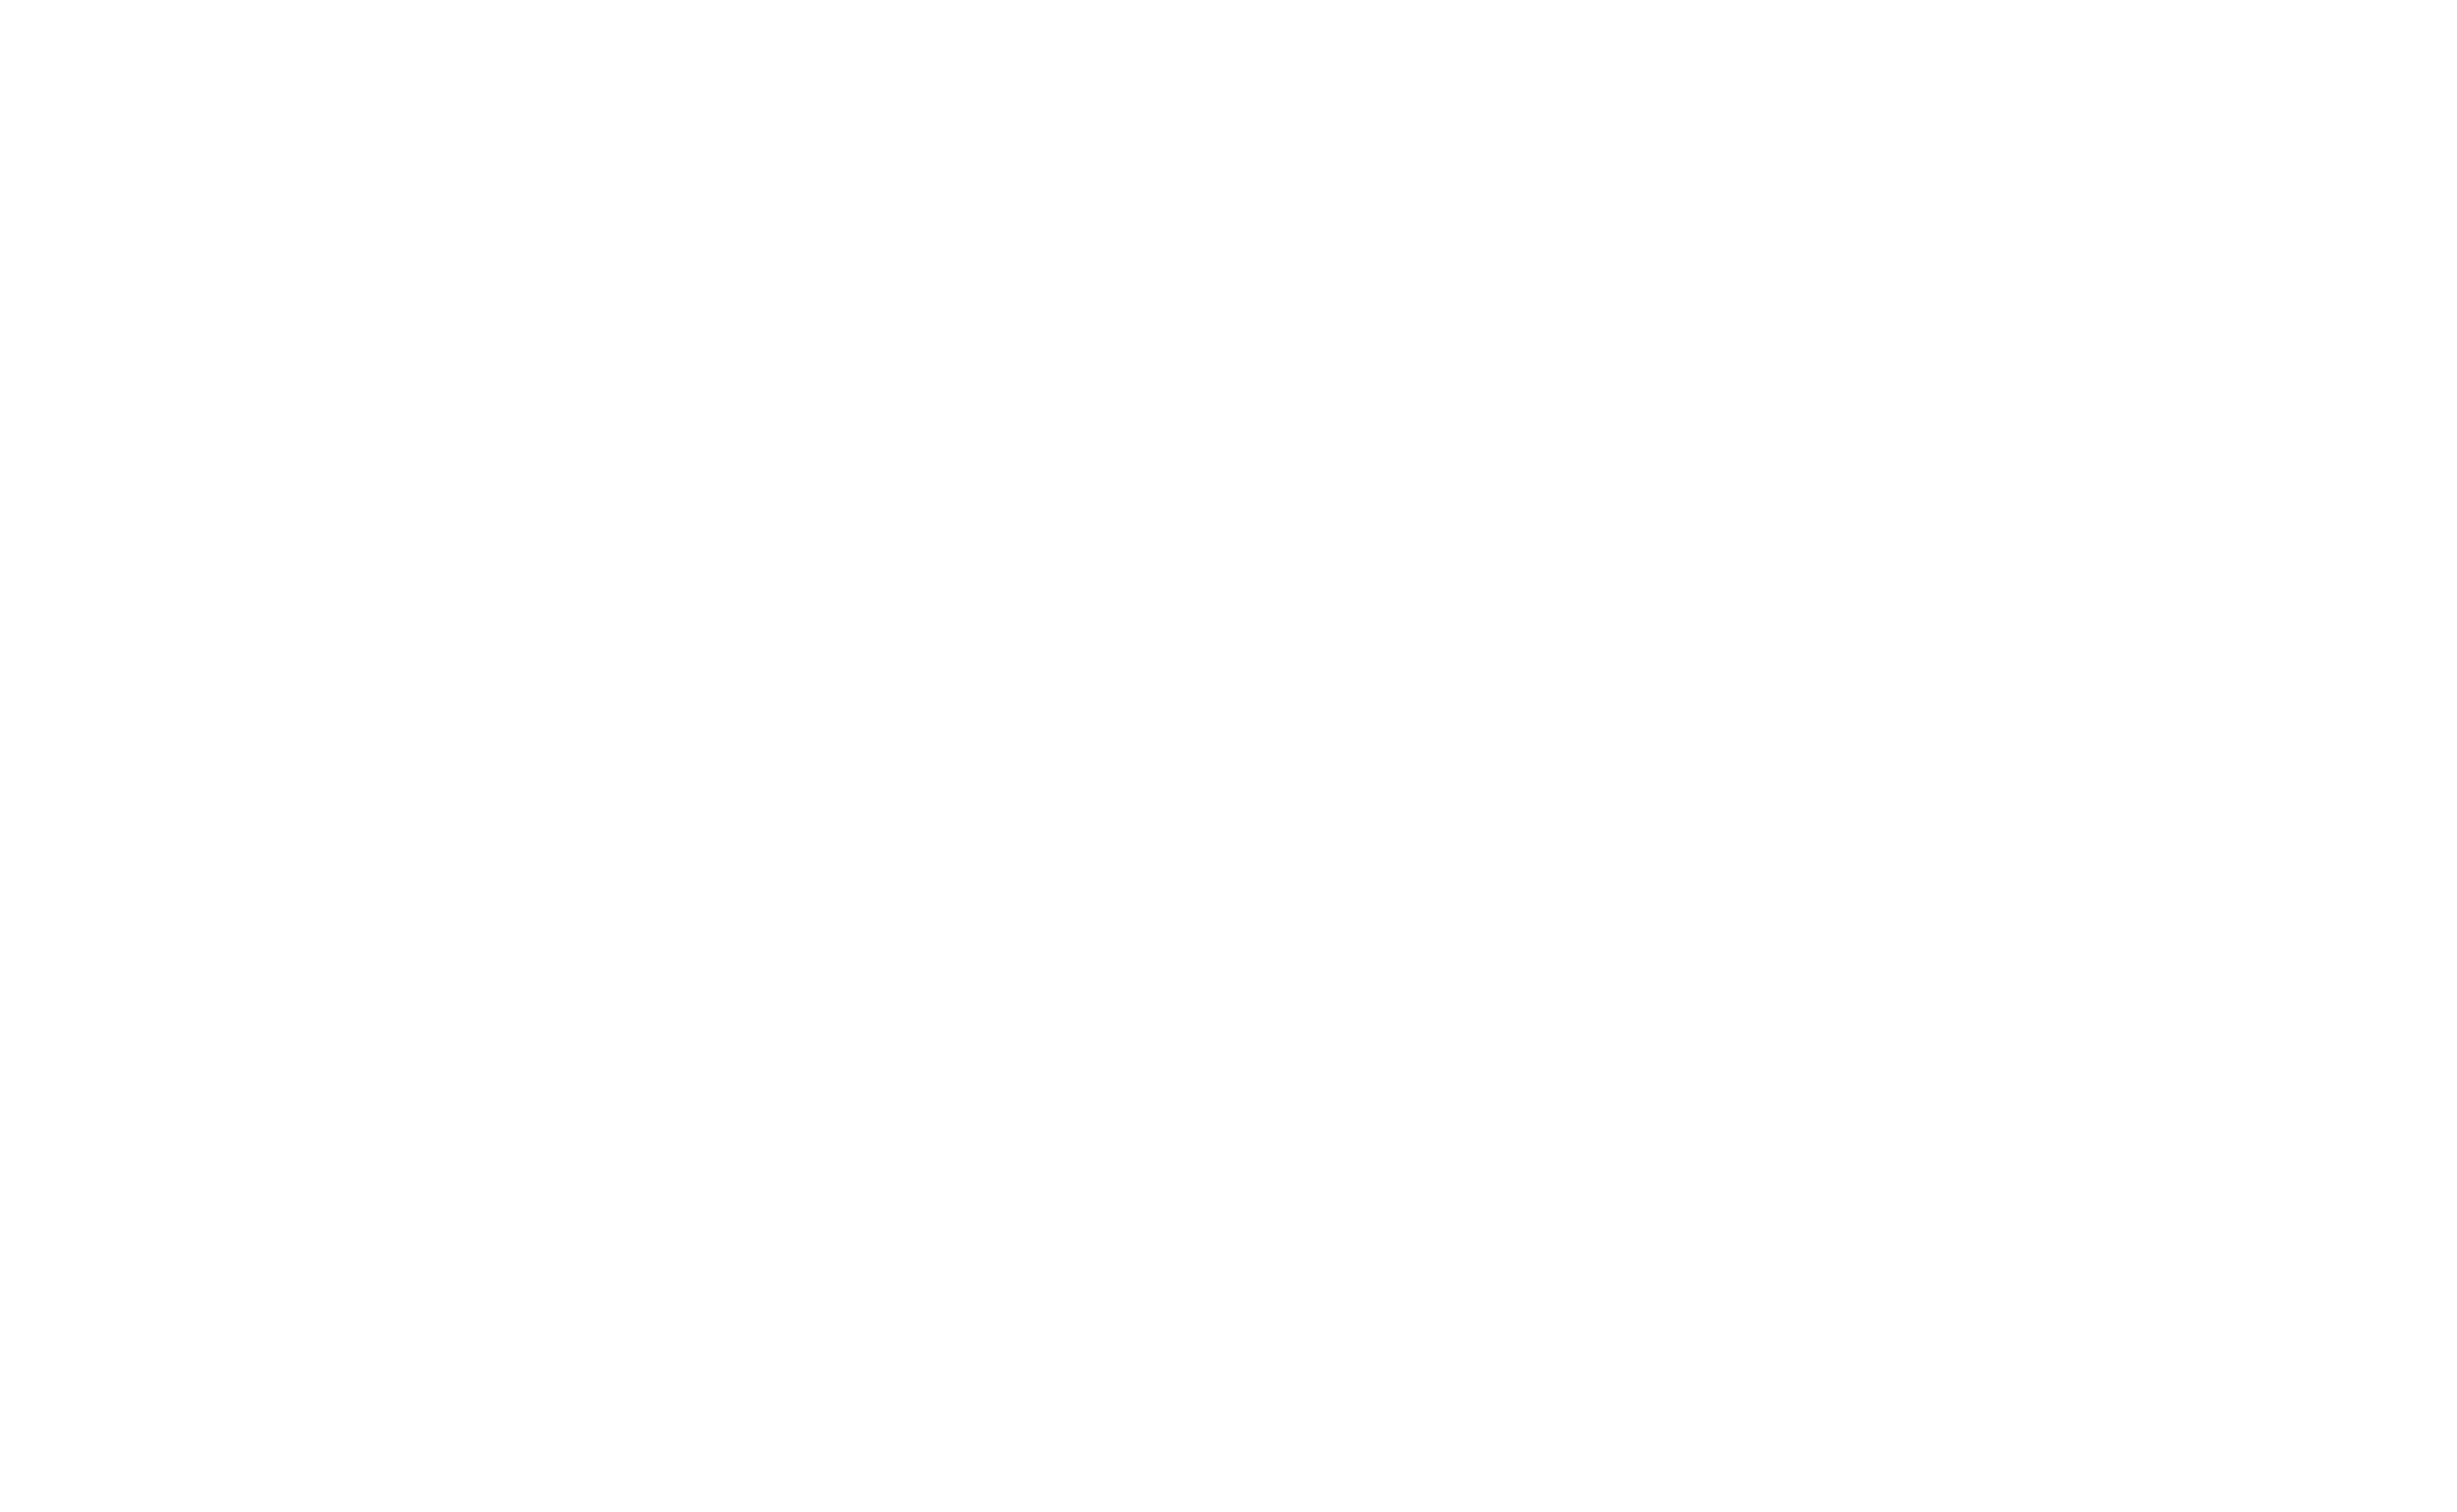 Revelio Logo with text